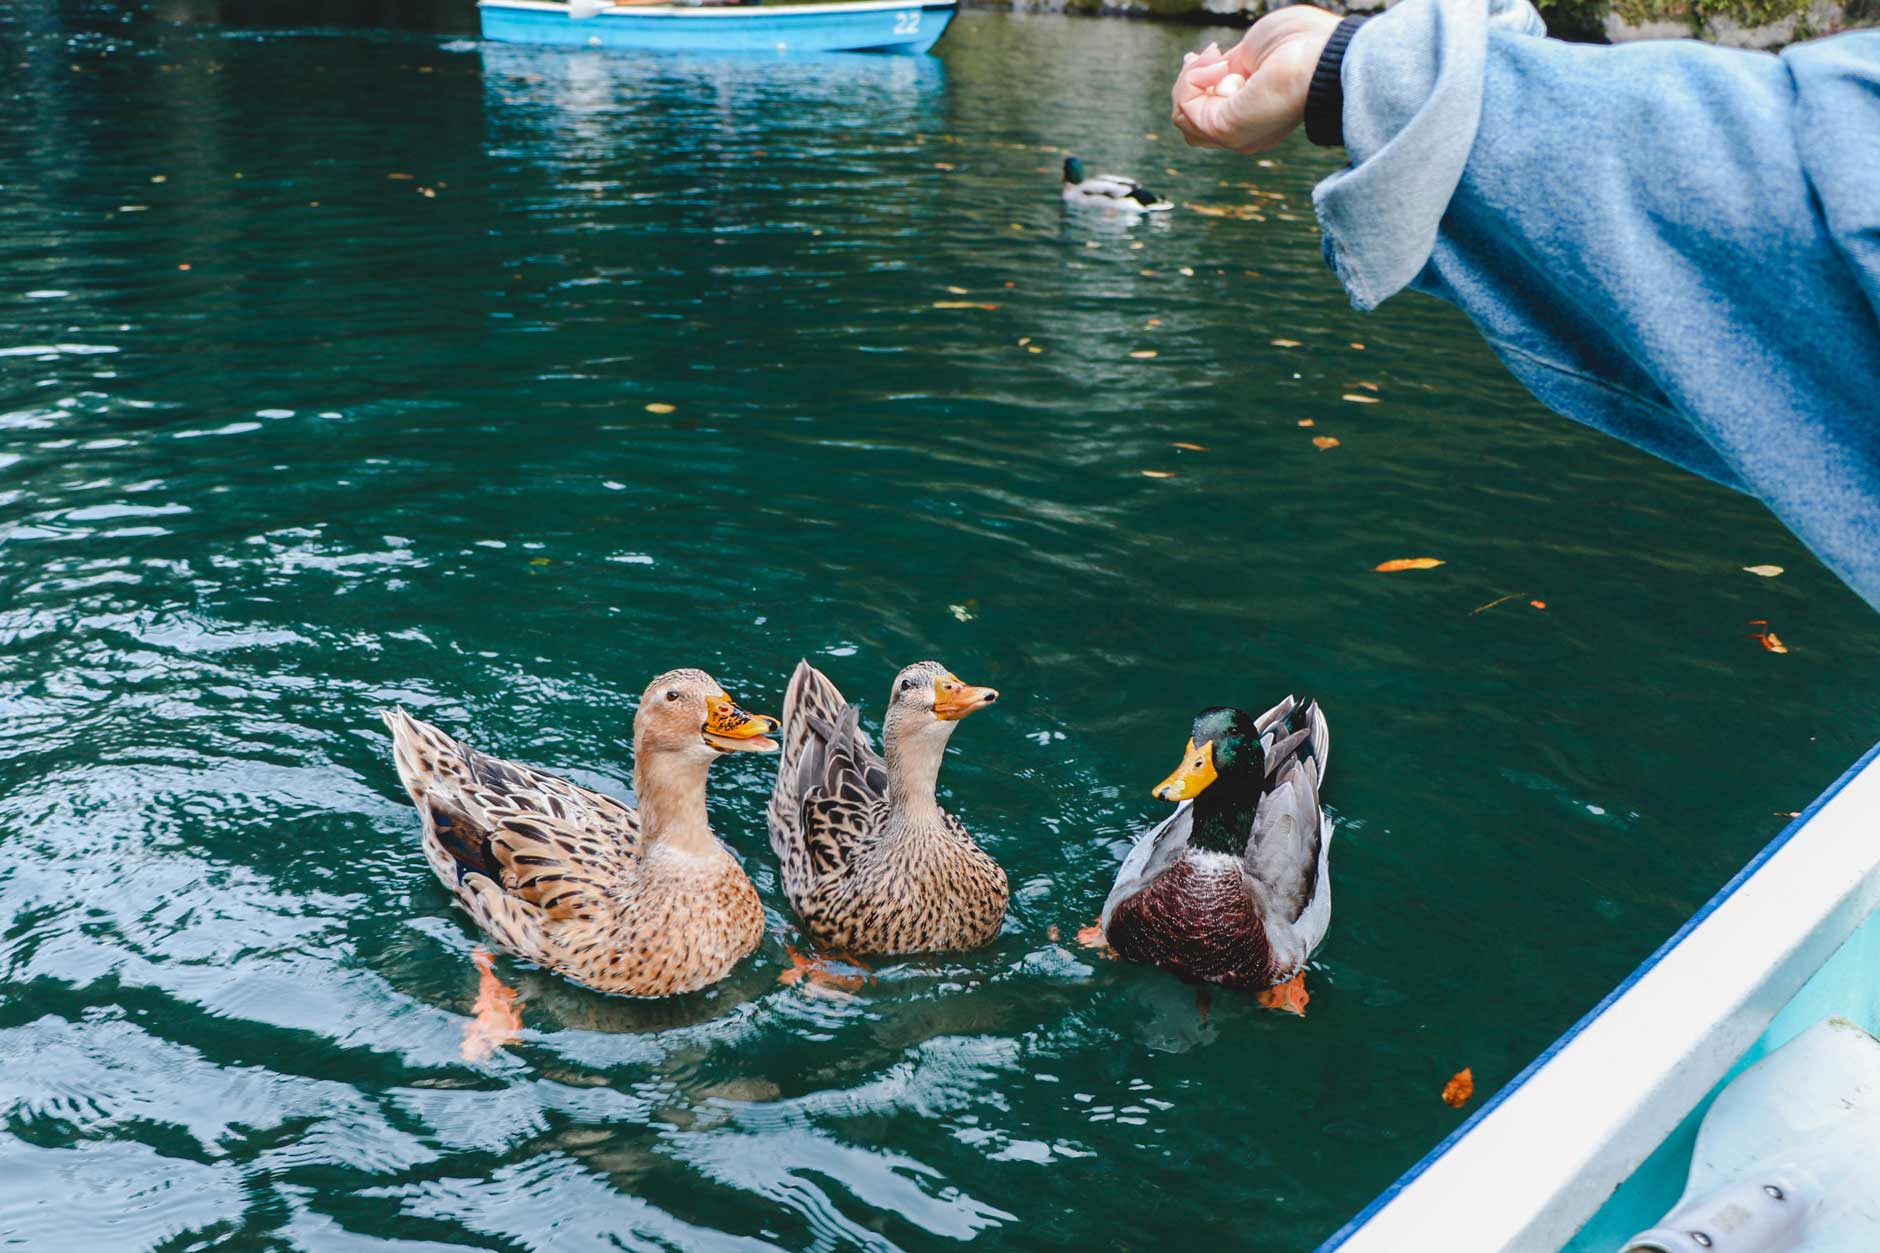 Feeding ducks at Takachiho Gorge